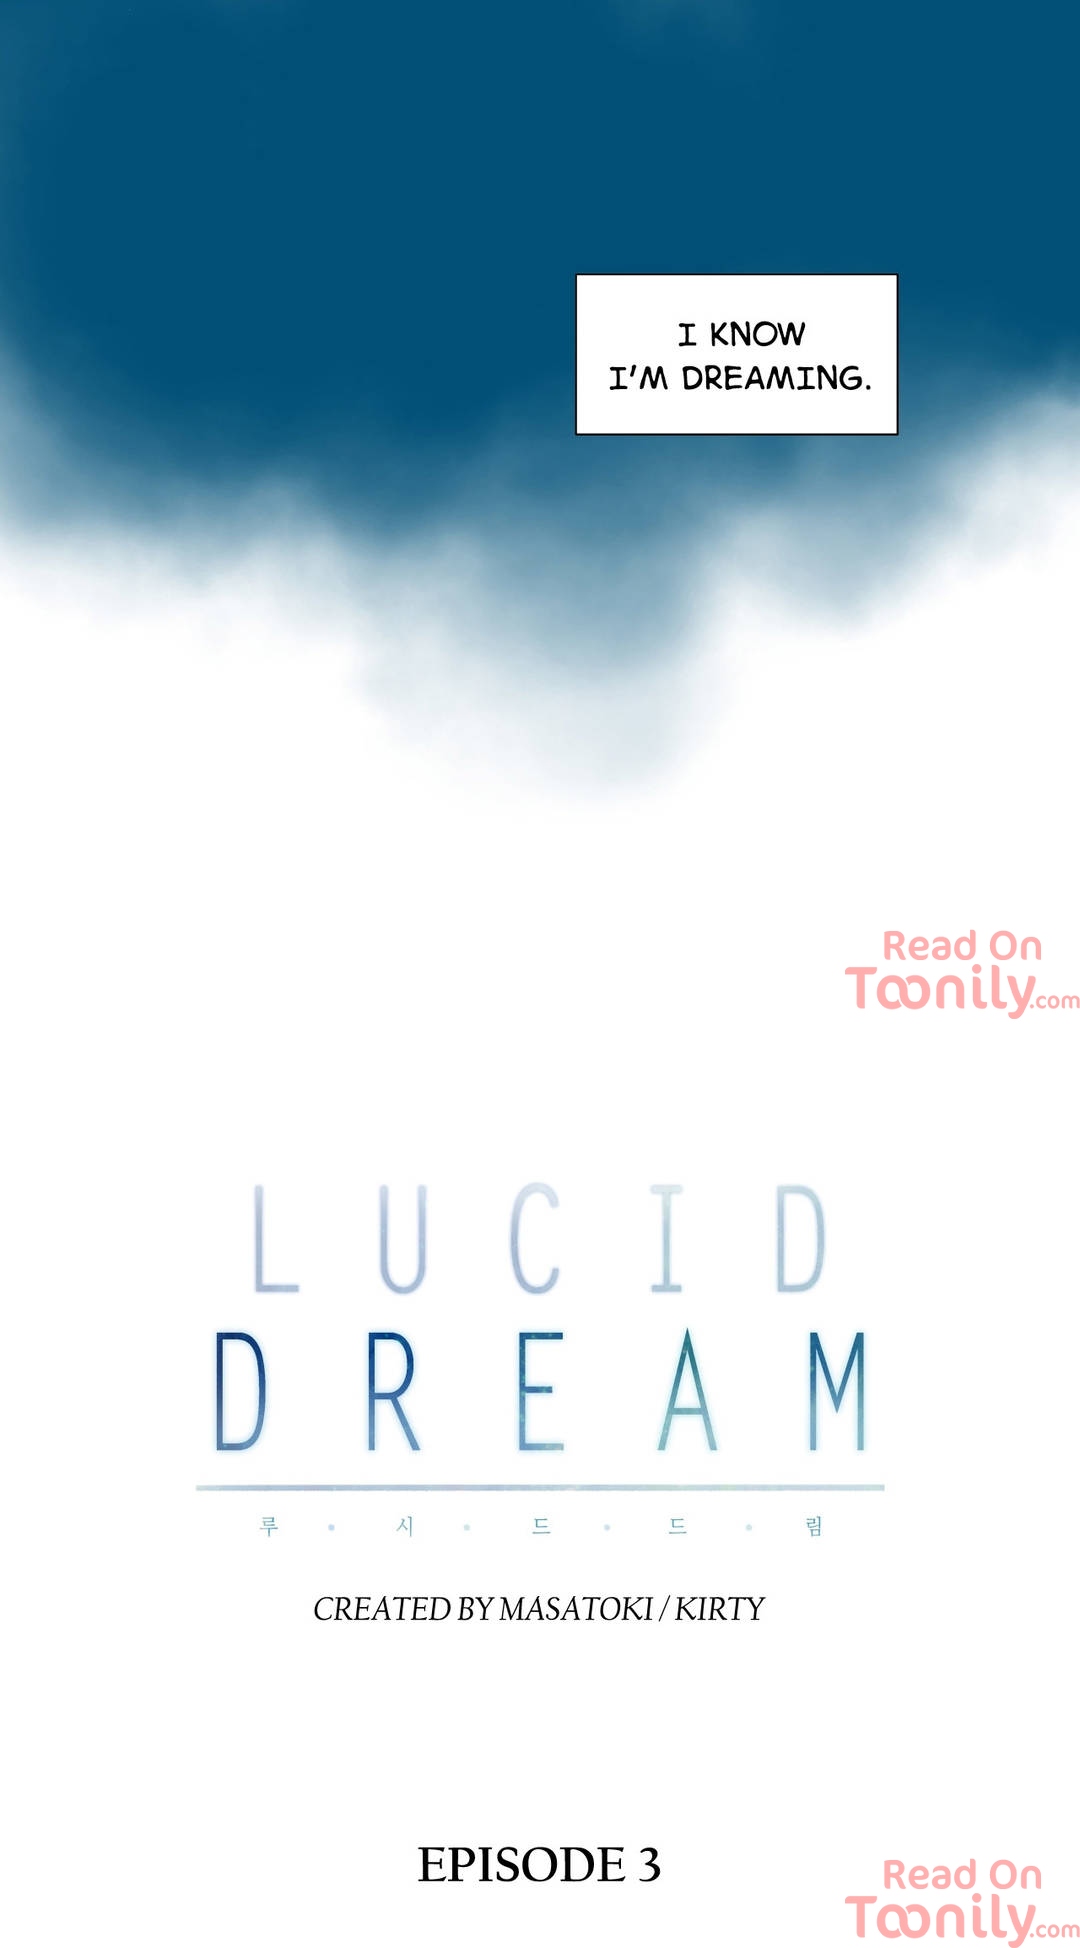 Lucid Dream image